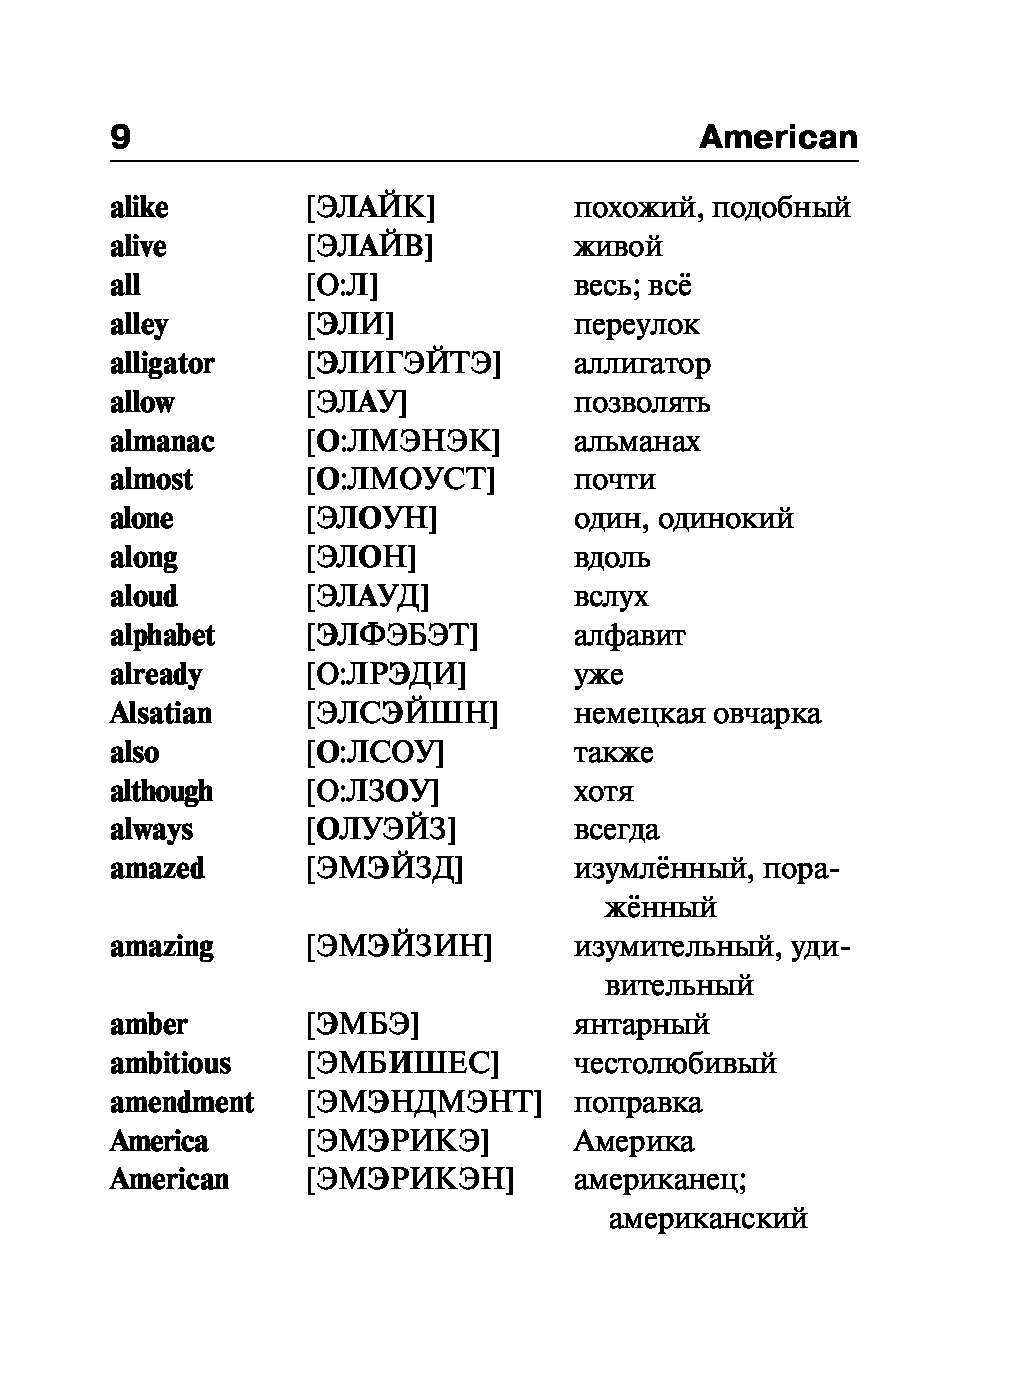 Словарь английского языка с переводом на русский